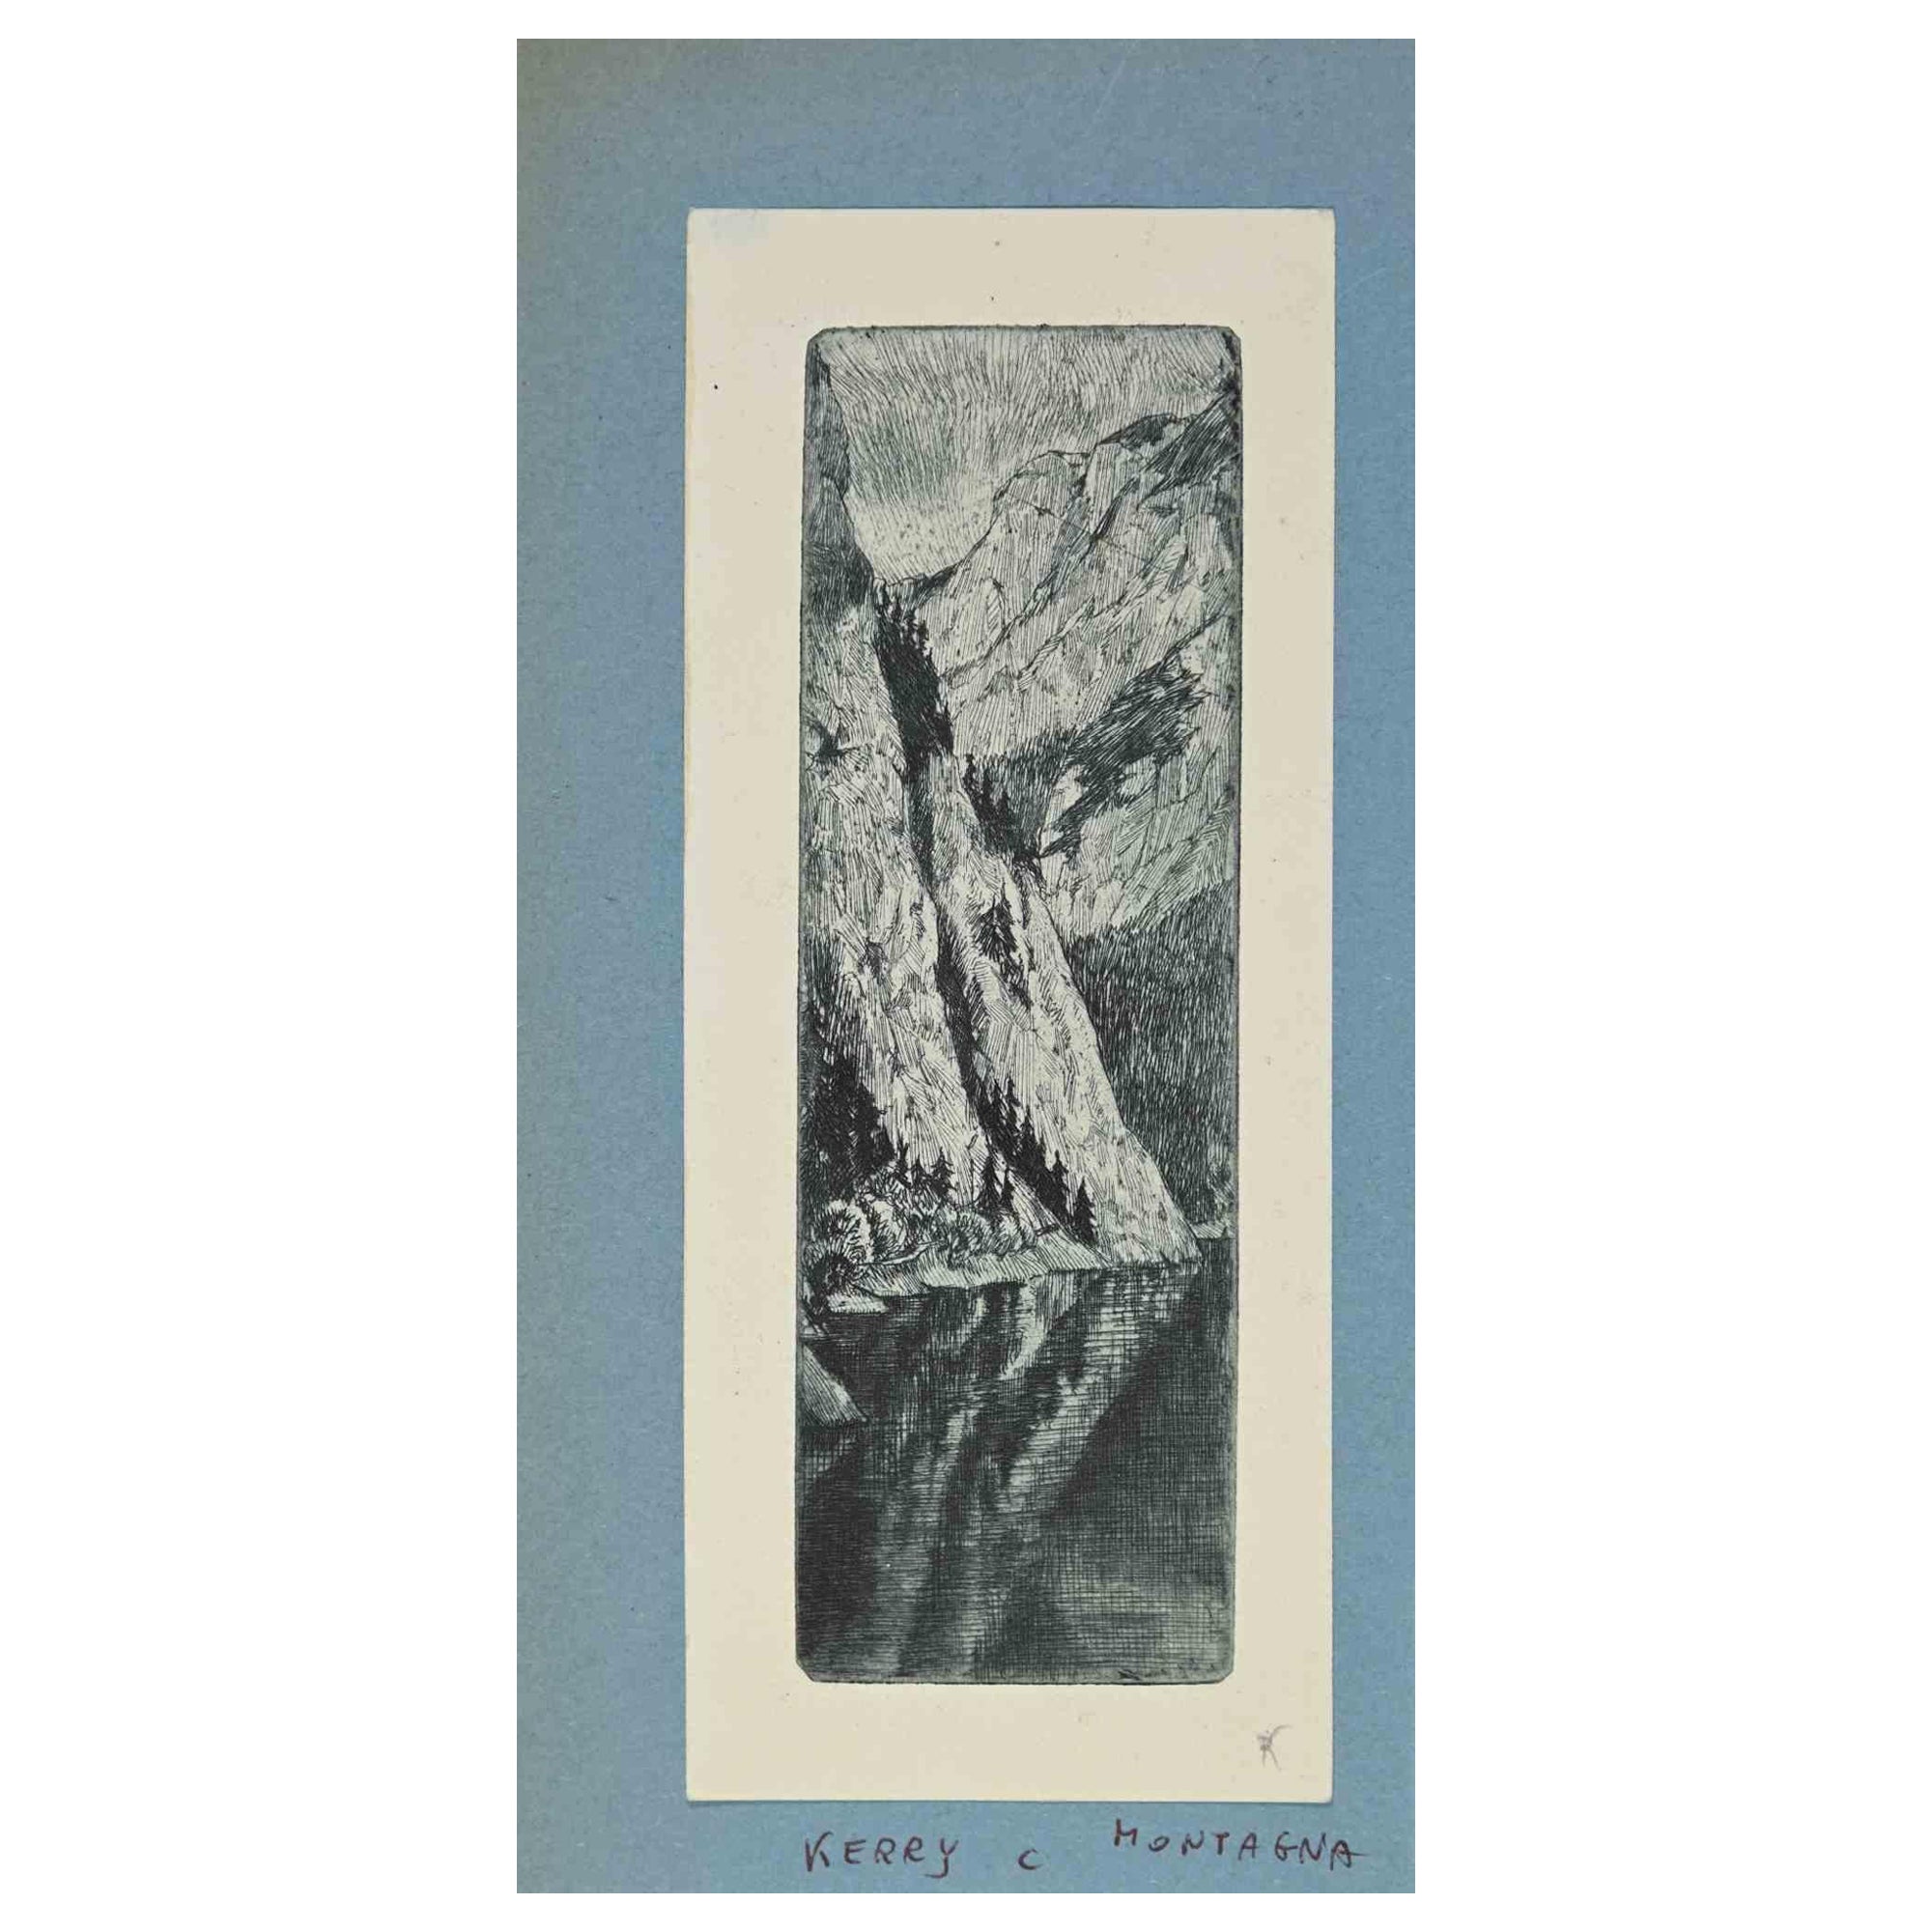 Ex Libris - Berge ist ein Kunstwerk, das in den 1940er Jahren von der österreichischen Künstlerin Christine Kerry (1889-1978) geschaffen wurde.

Radierungsdruck auf Elfenbeinpapier. Handsigniert auf der Rückseite.

Das Werk ist auf farbigen Karton